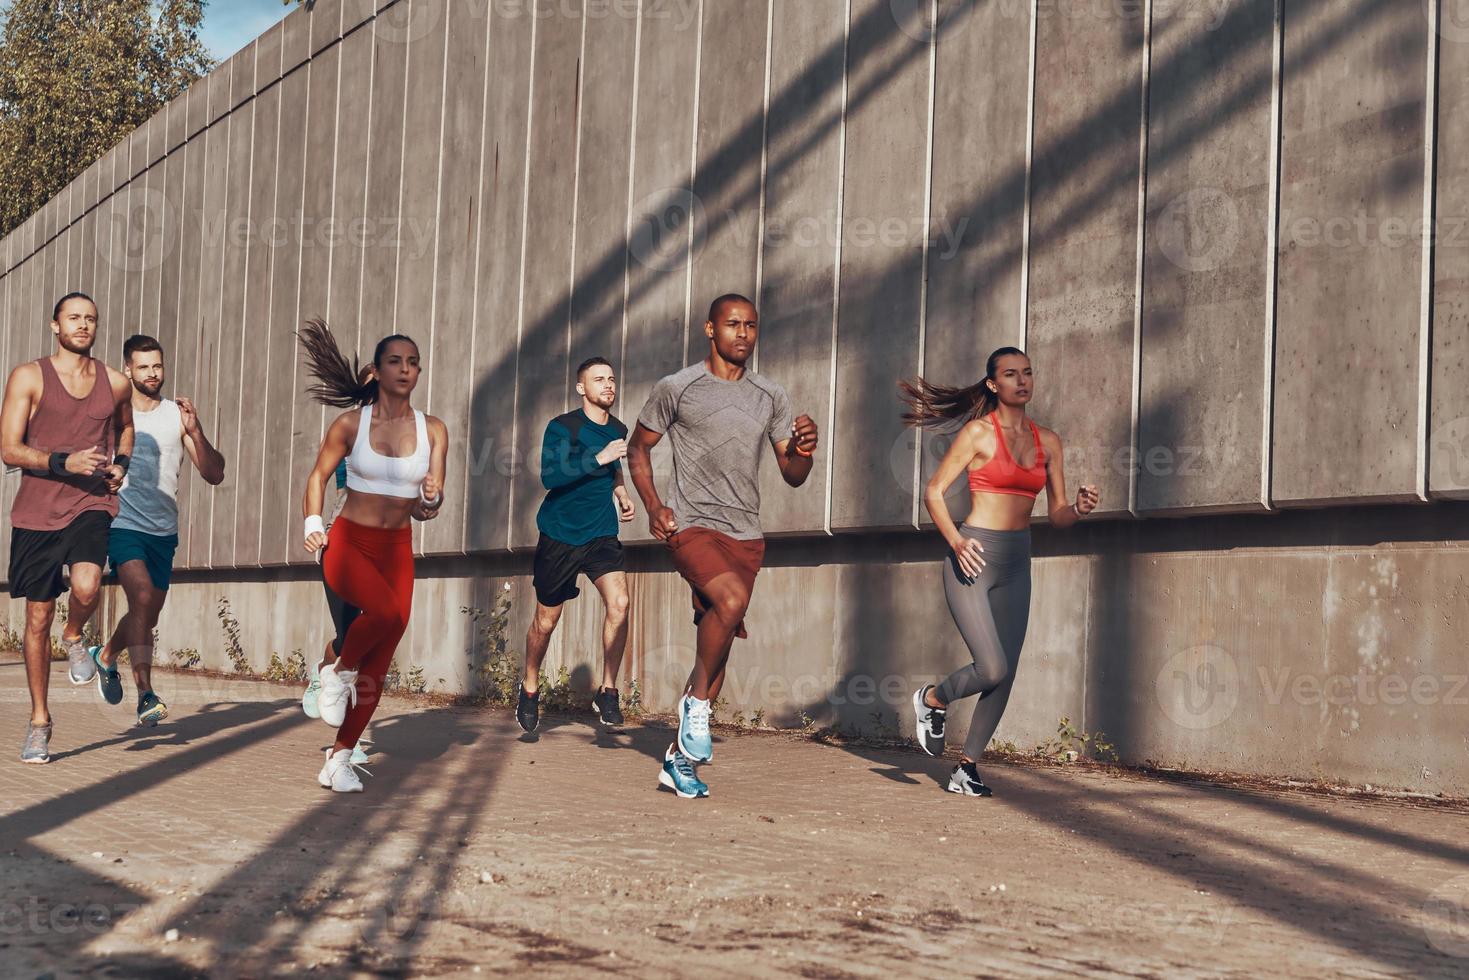 vol lengte van mensen in sport- kleding jogging terwijl oefenen Aan de trottoir buitenshuis foto